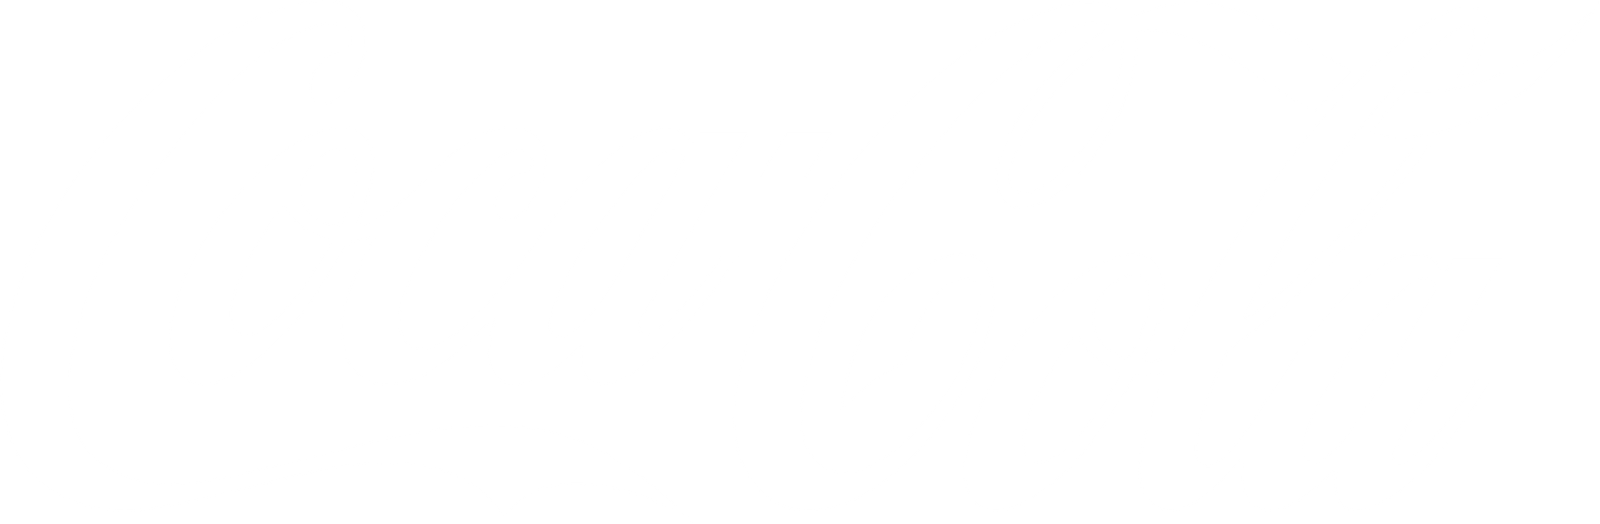 coca-cola-logo-png-transparent-1